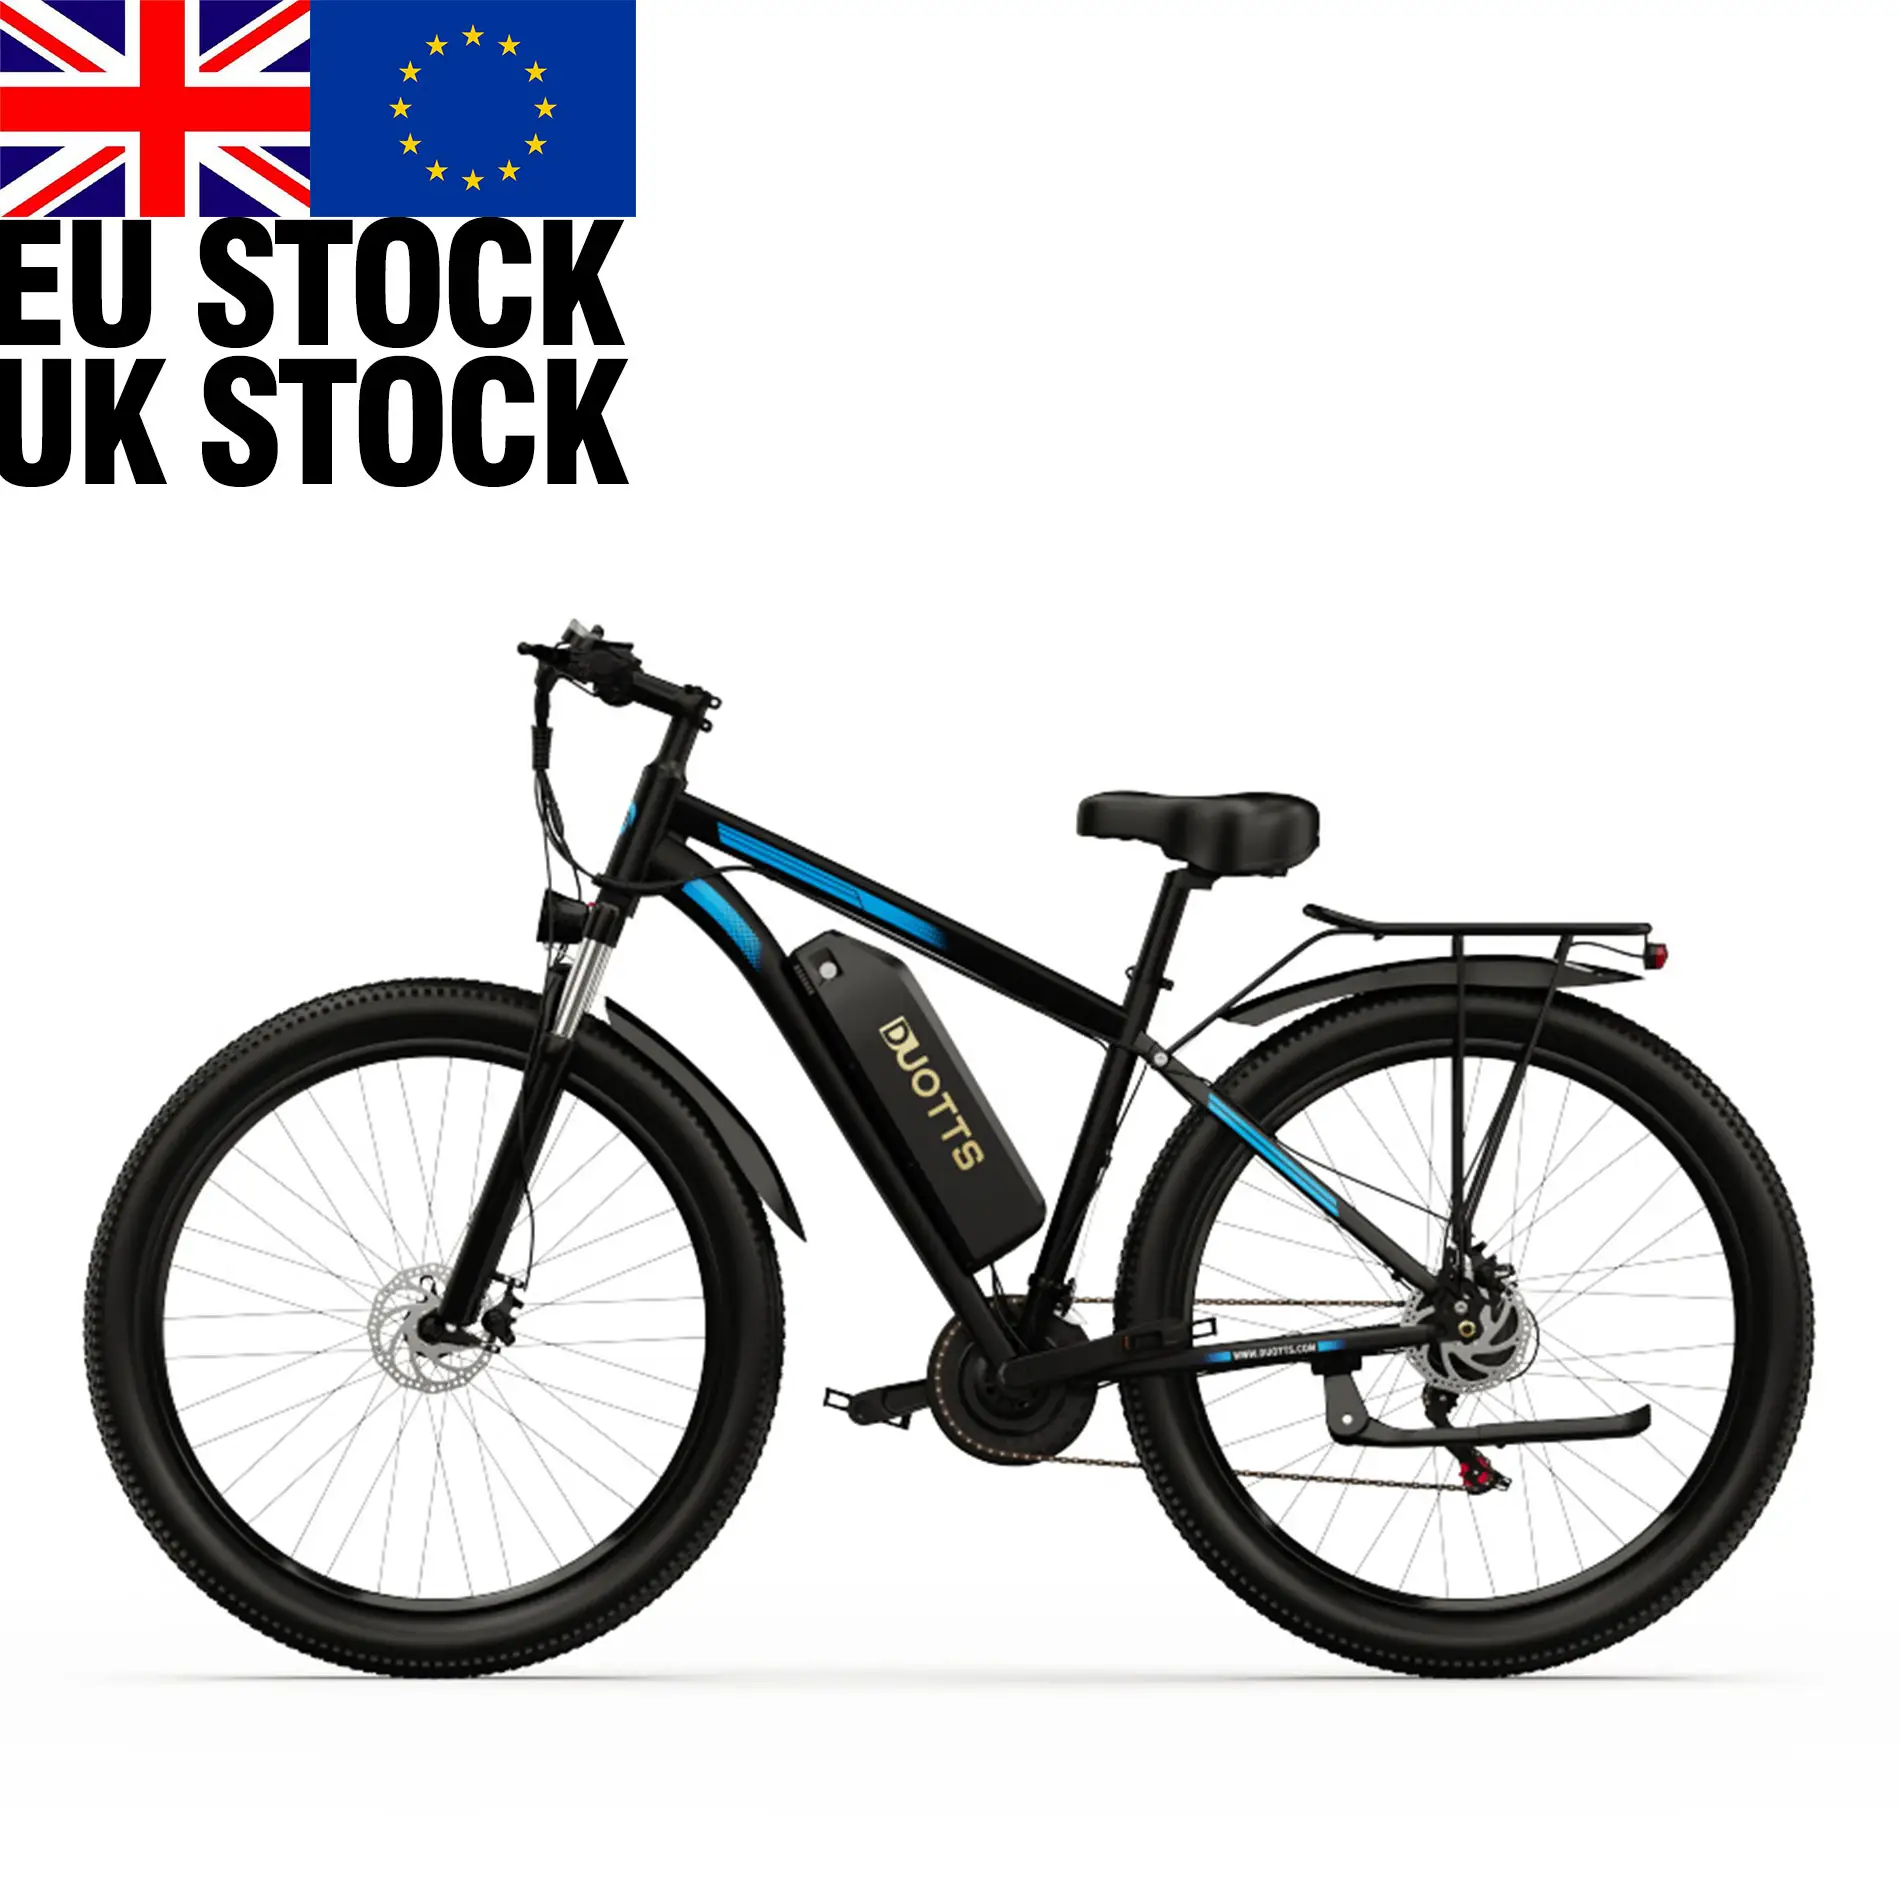 دراجة كهربائية DUOTTS C29 عالية الأداء والتكلفة للطرق مقاس 29 بوصة 750 وات بسعر خاص من مستودع الاتحاد الأوروبي